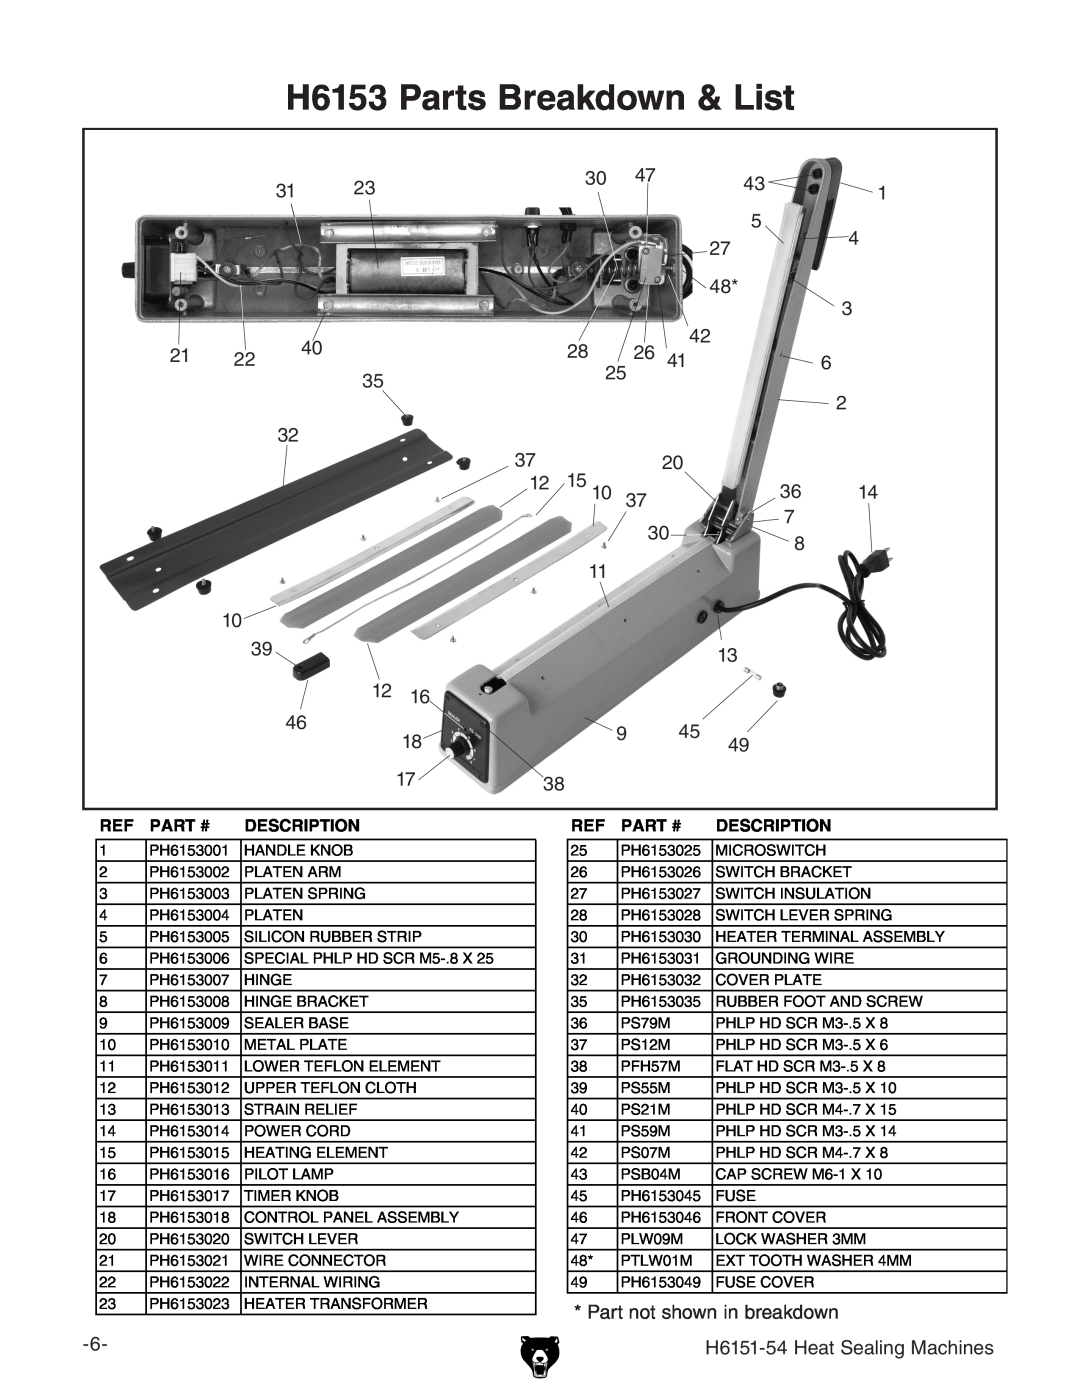 Grizzly H6151-54 specifications H6153 Parts Breakdown & List, Ref Part #, Description 